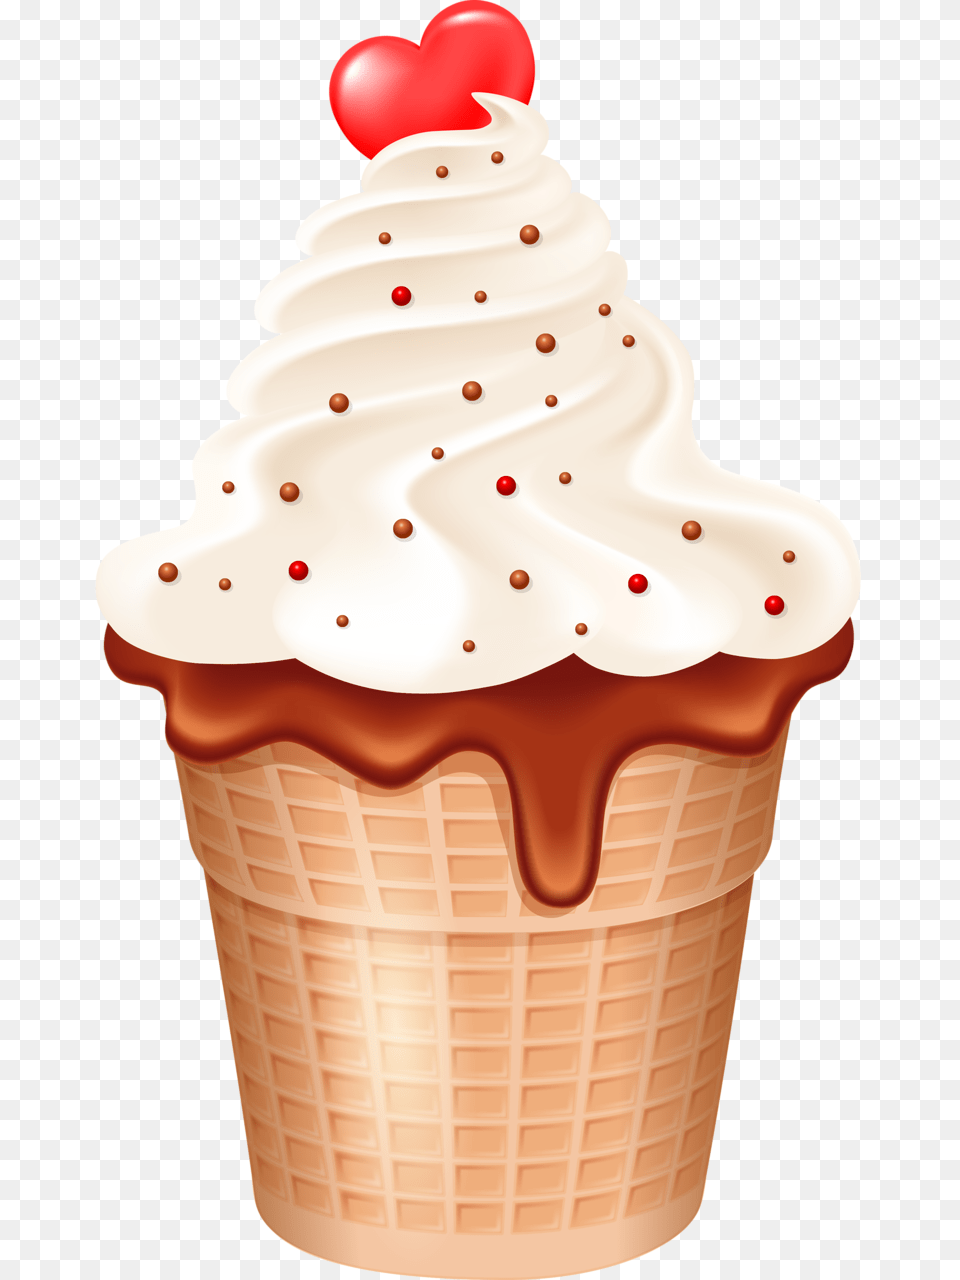 Cute Clipart Ice Cream Ice Cream, Cake, Ice Cream, Food, Dessert Png Image